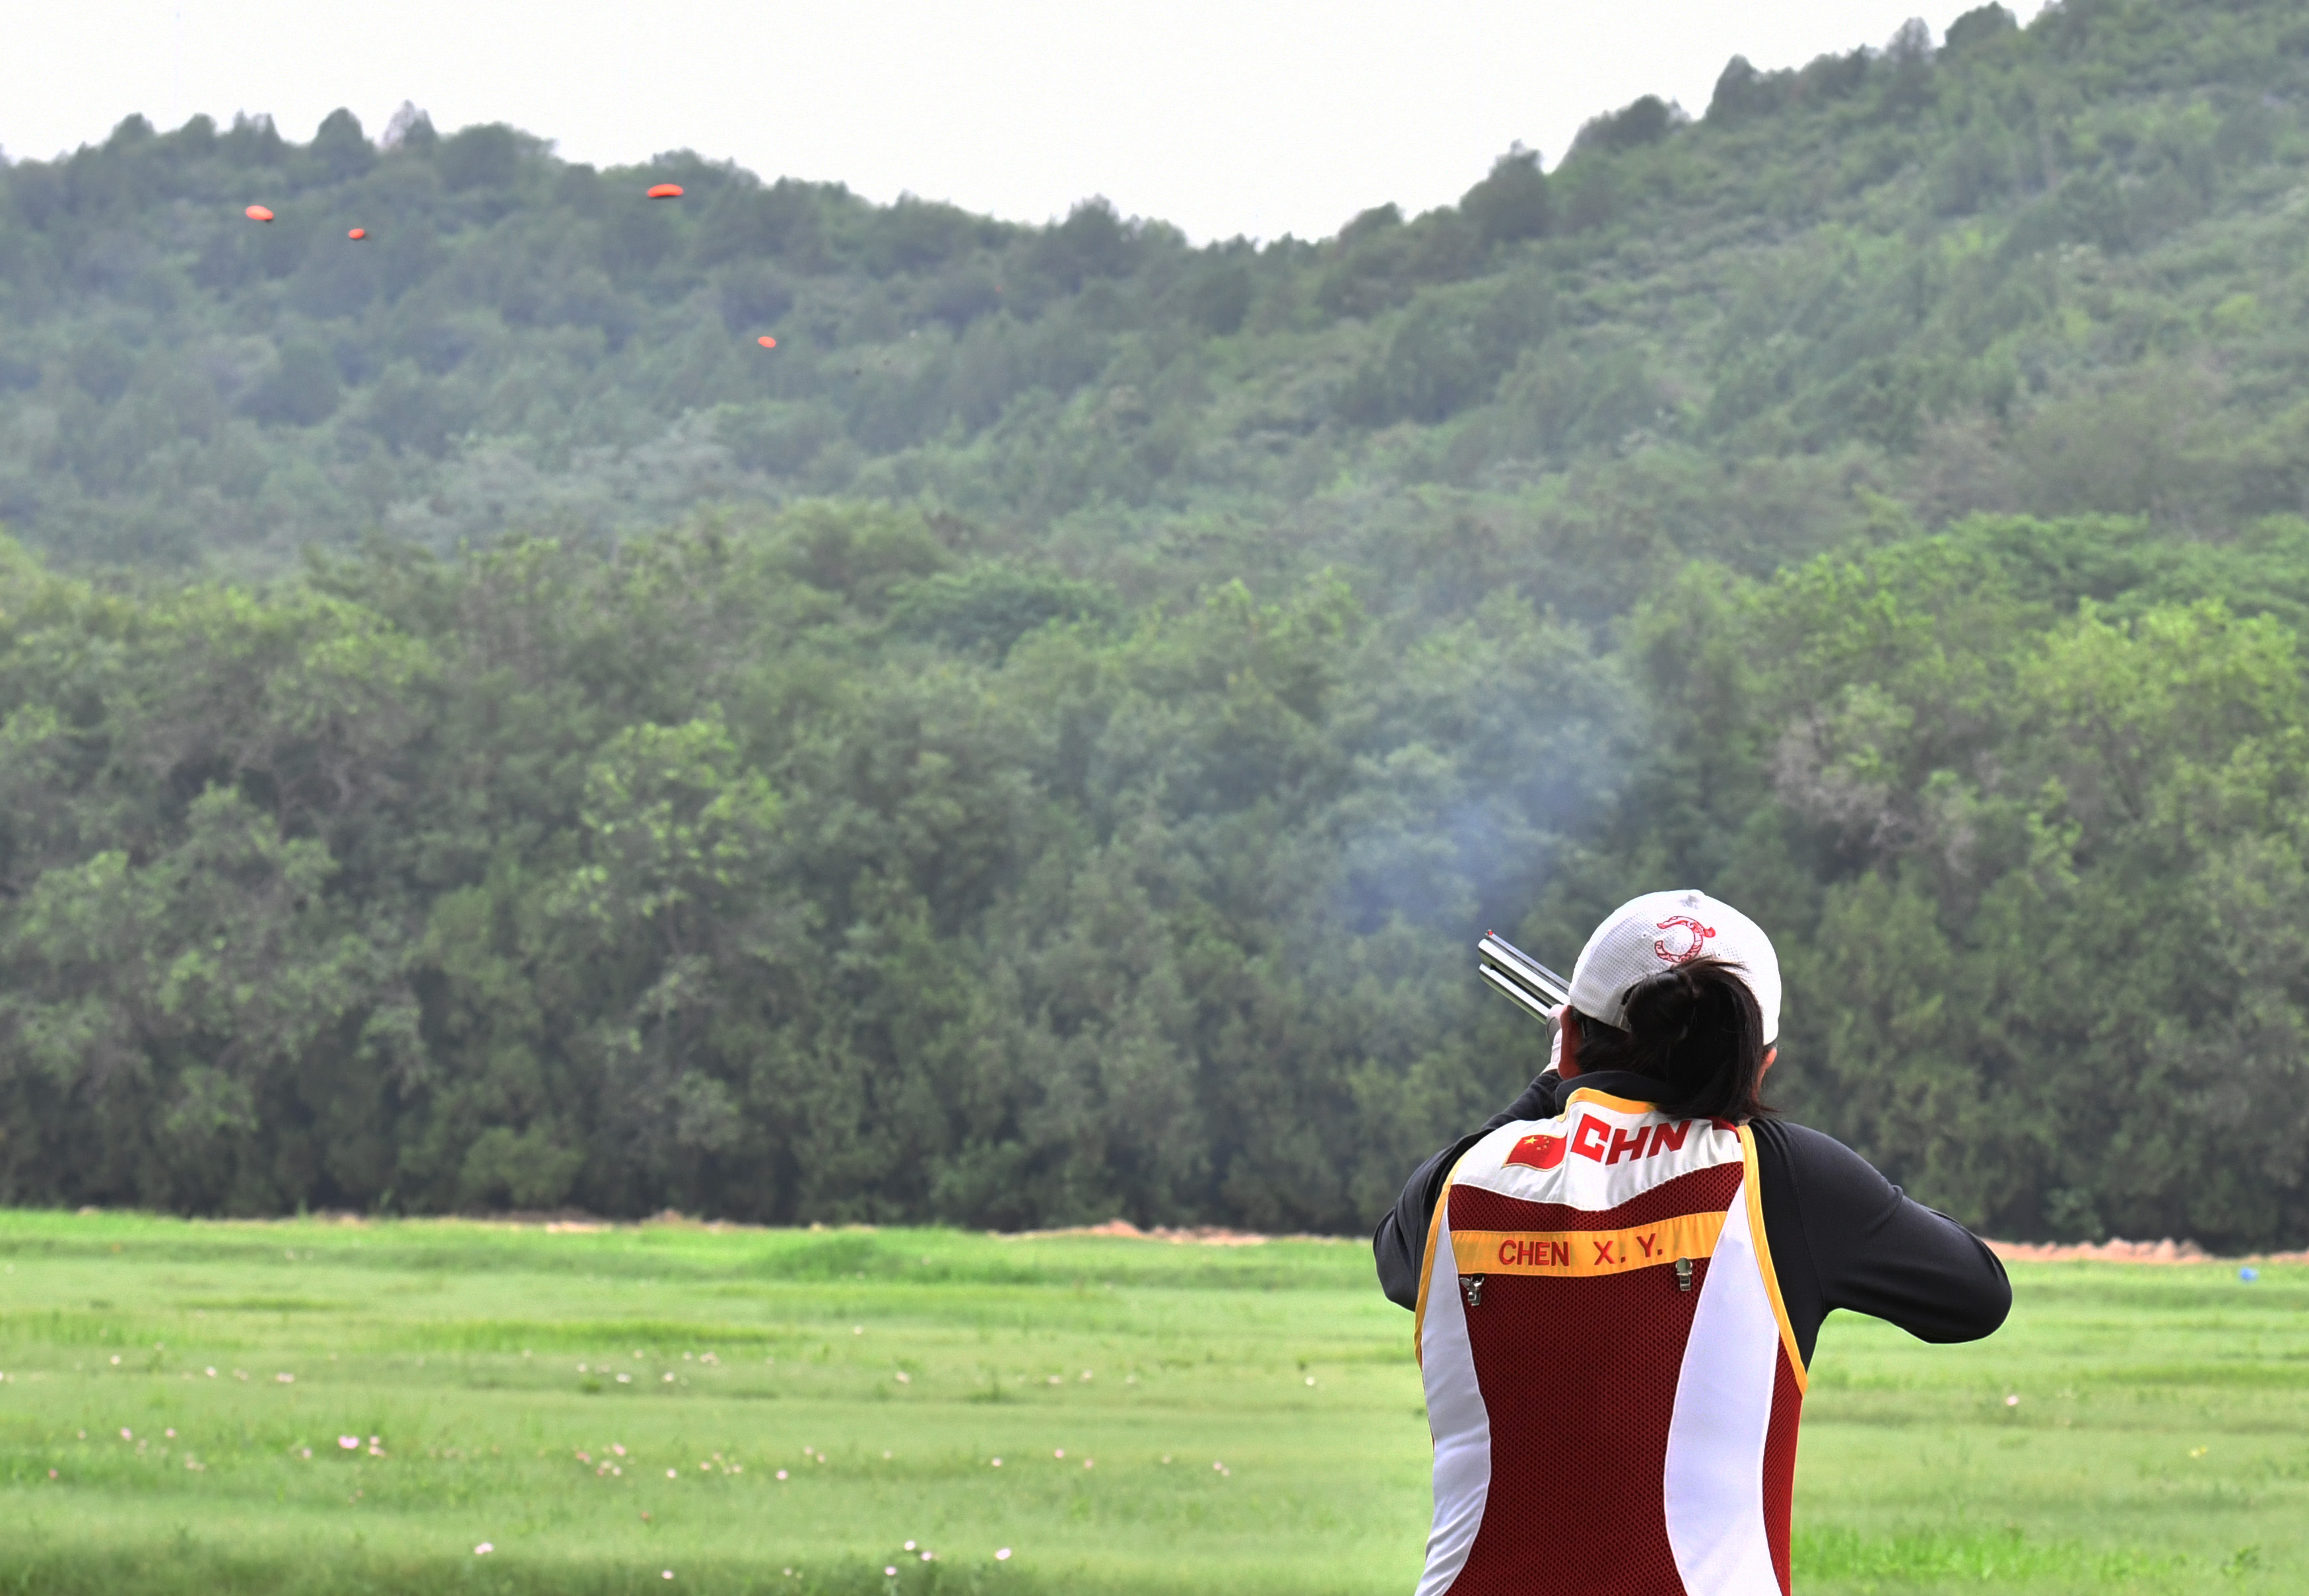 8月9日,八一射击队飞碟项目选手陈晓瑶在训练中.